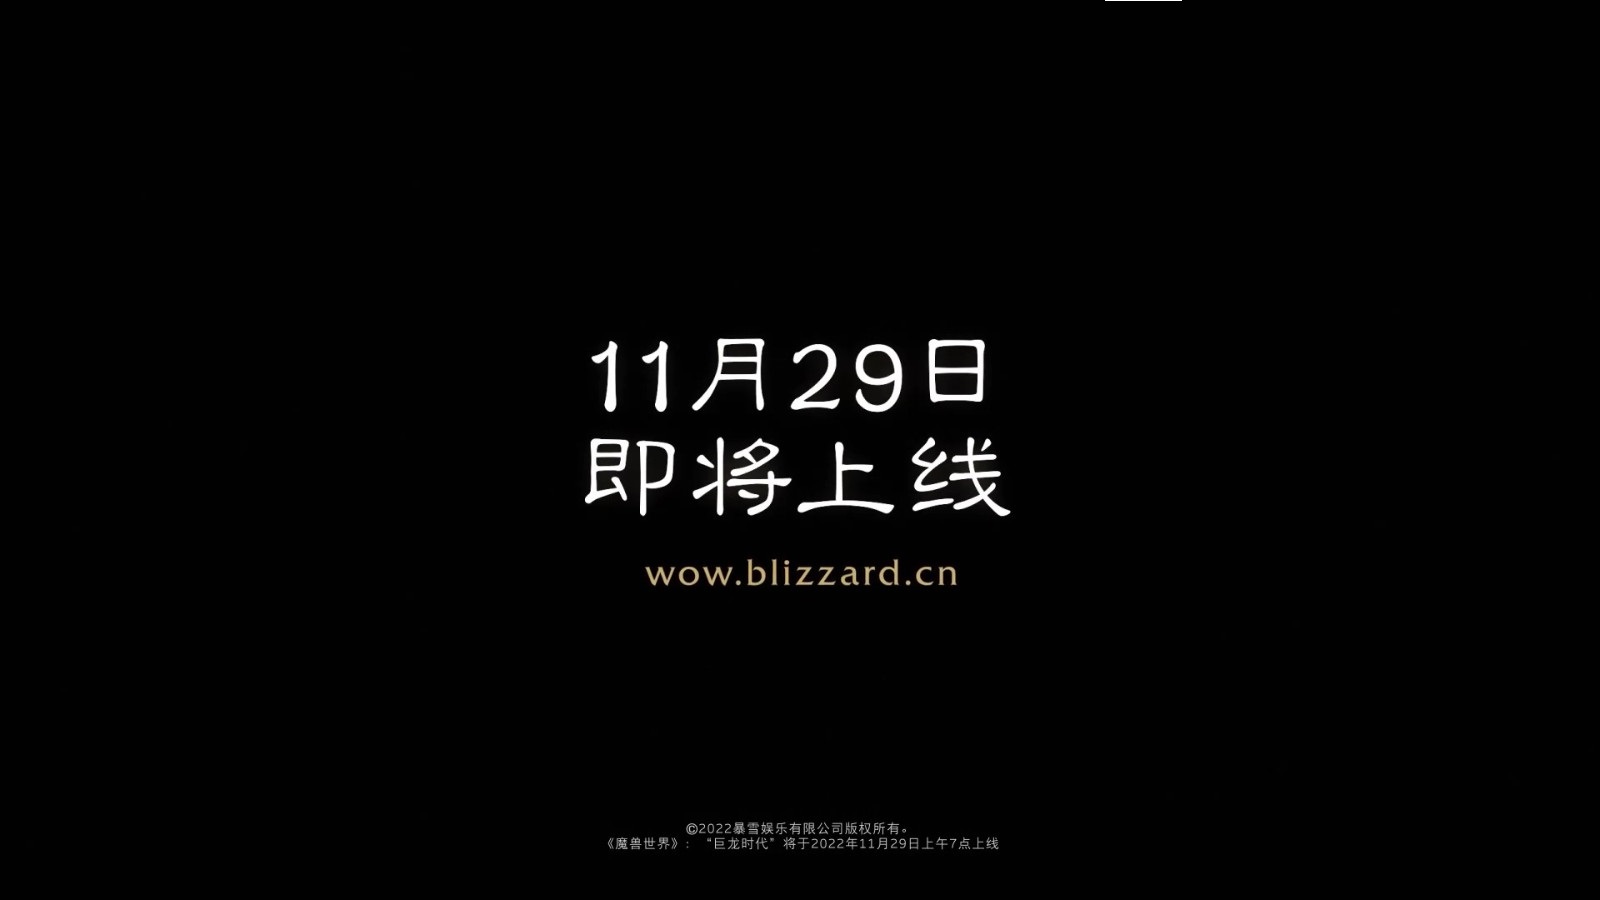 《魔兽世界》巨龙时代将于11月29日上线